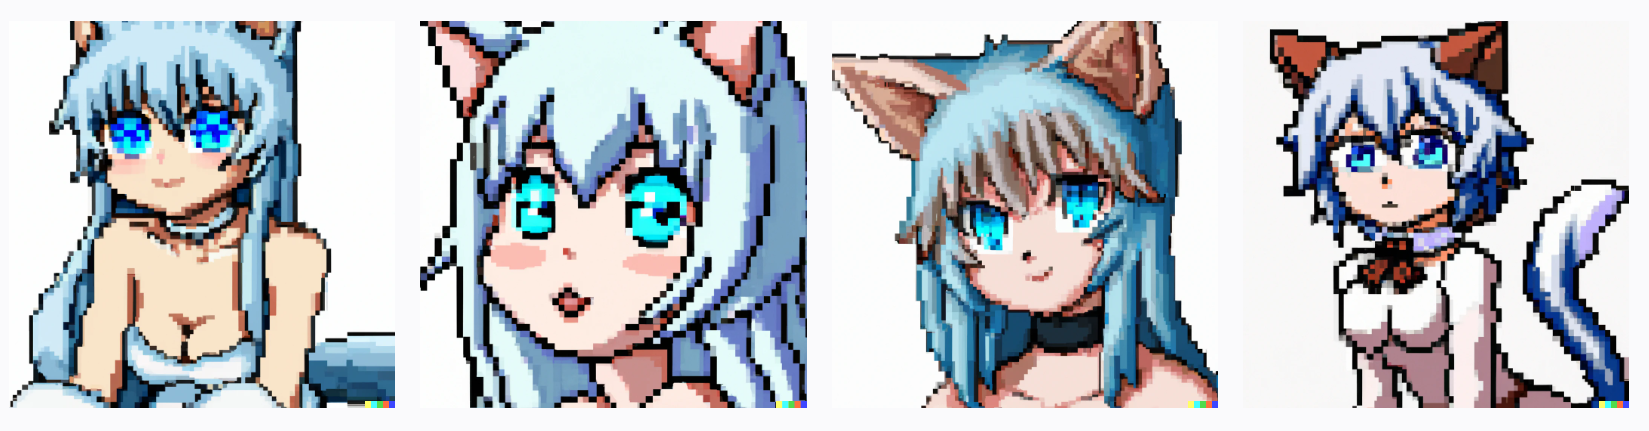 anime catgirl with blue eyes, 8k resolution, digital art, pixar art, full HD, pixel art